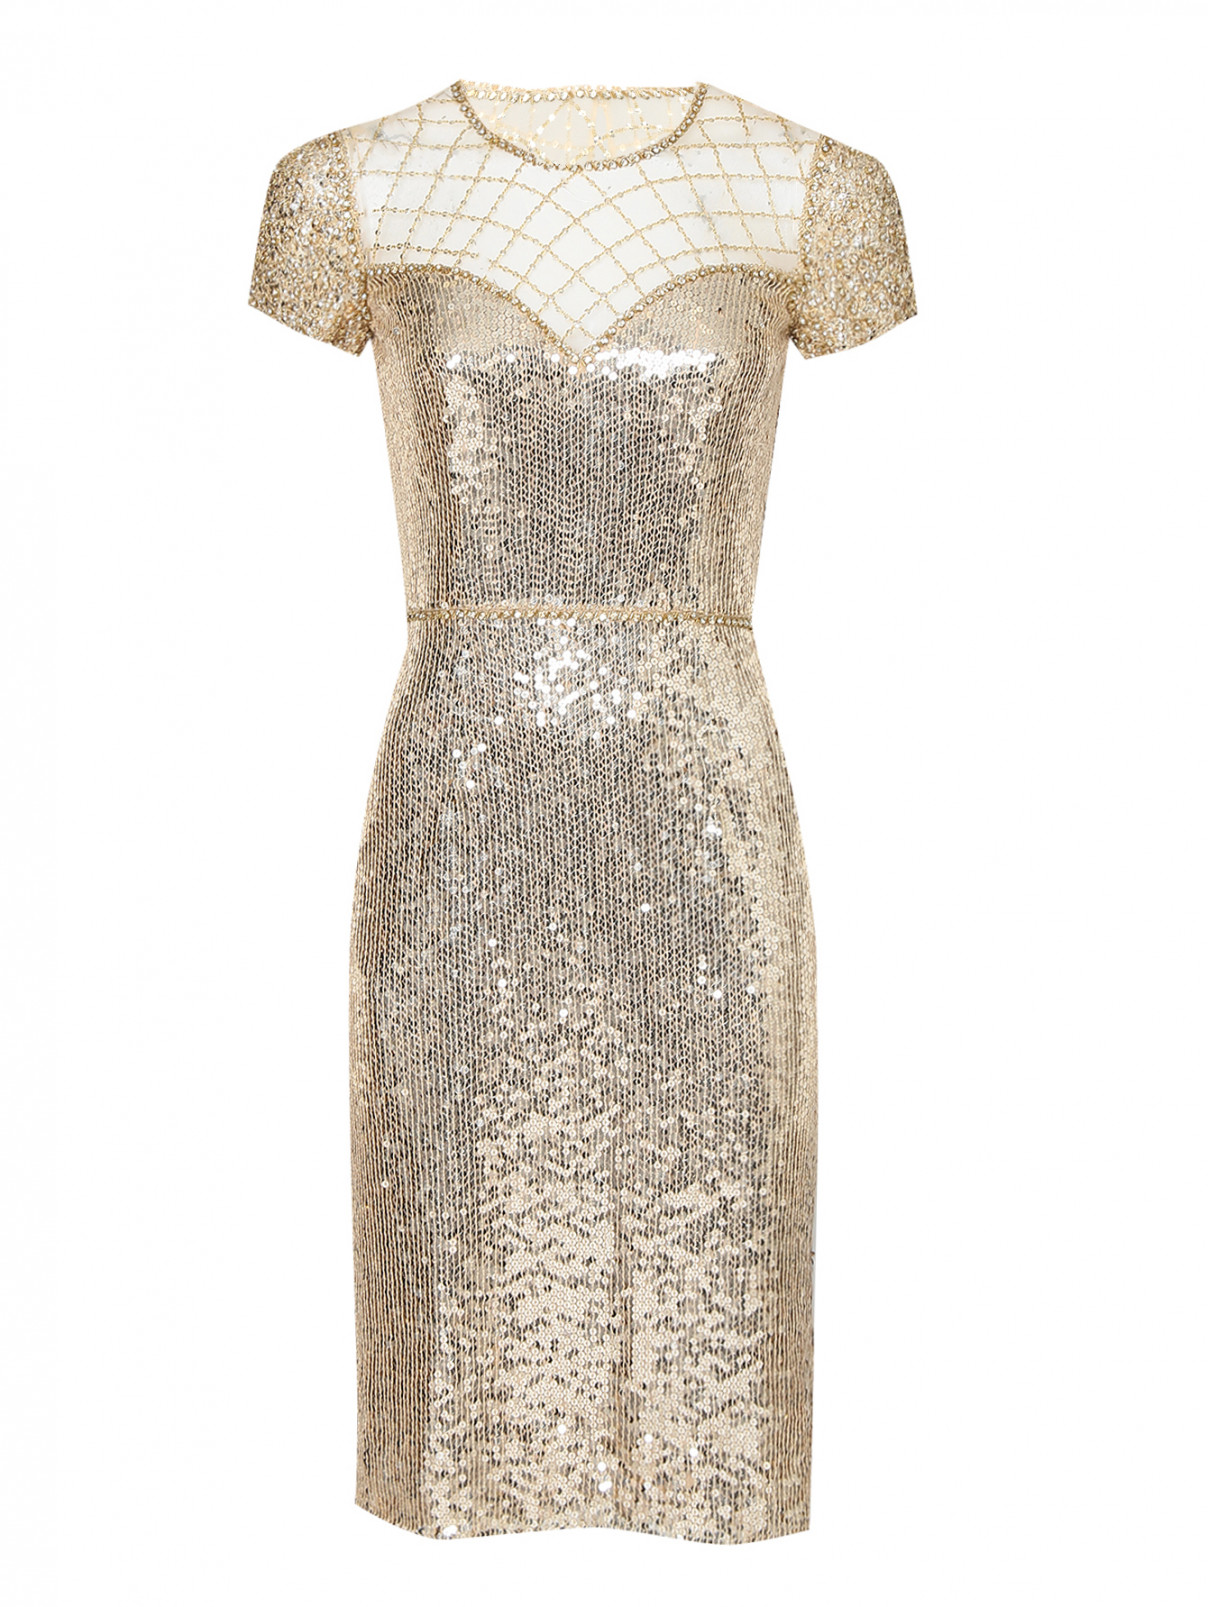 Платье в пайетках, декорированное бисером и кристаллами Jenny Packham  –  Общий вид  – Цвет:  Золотой